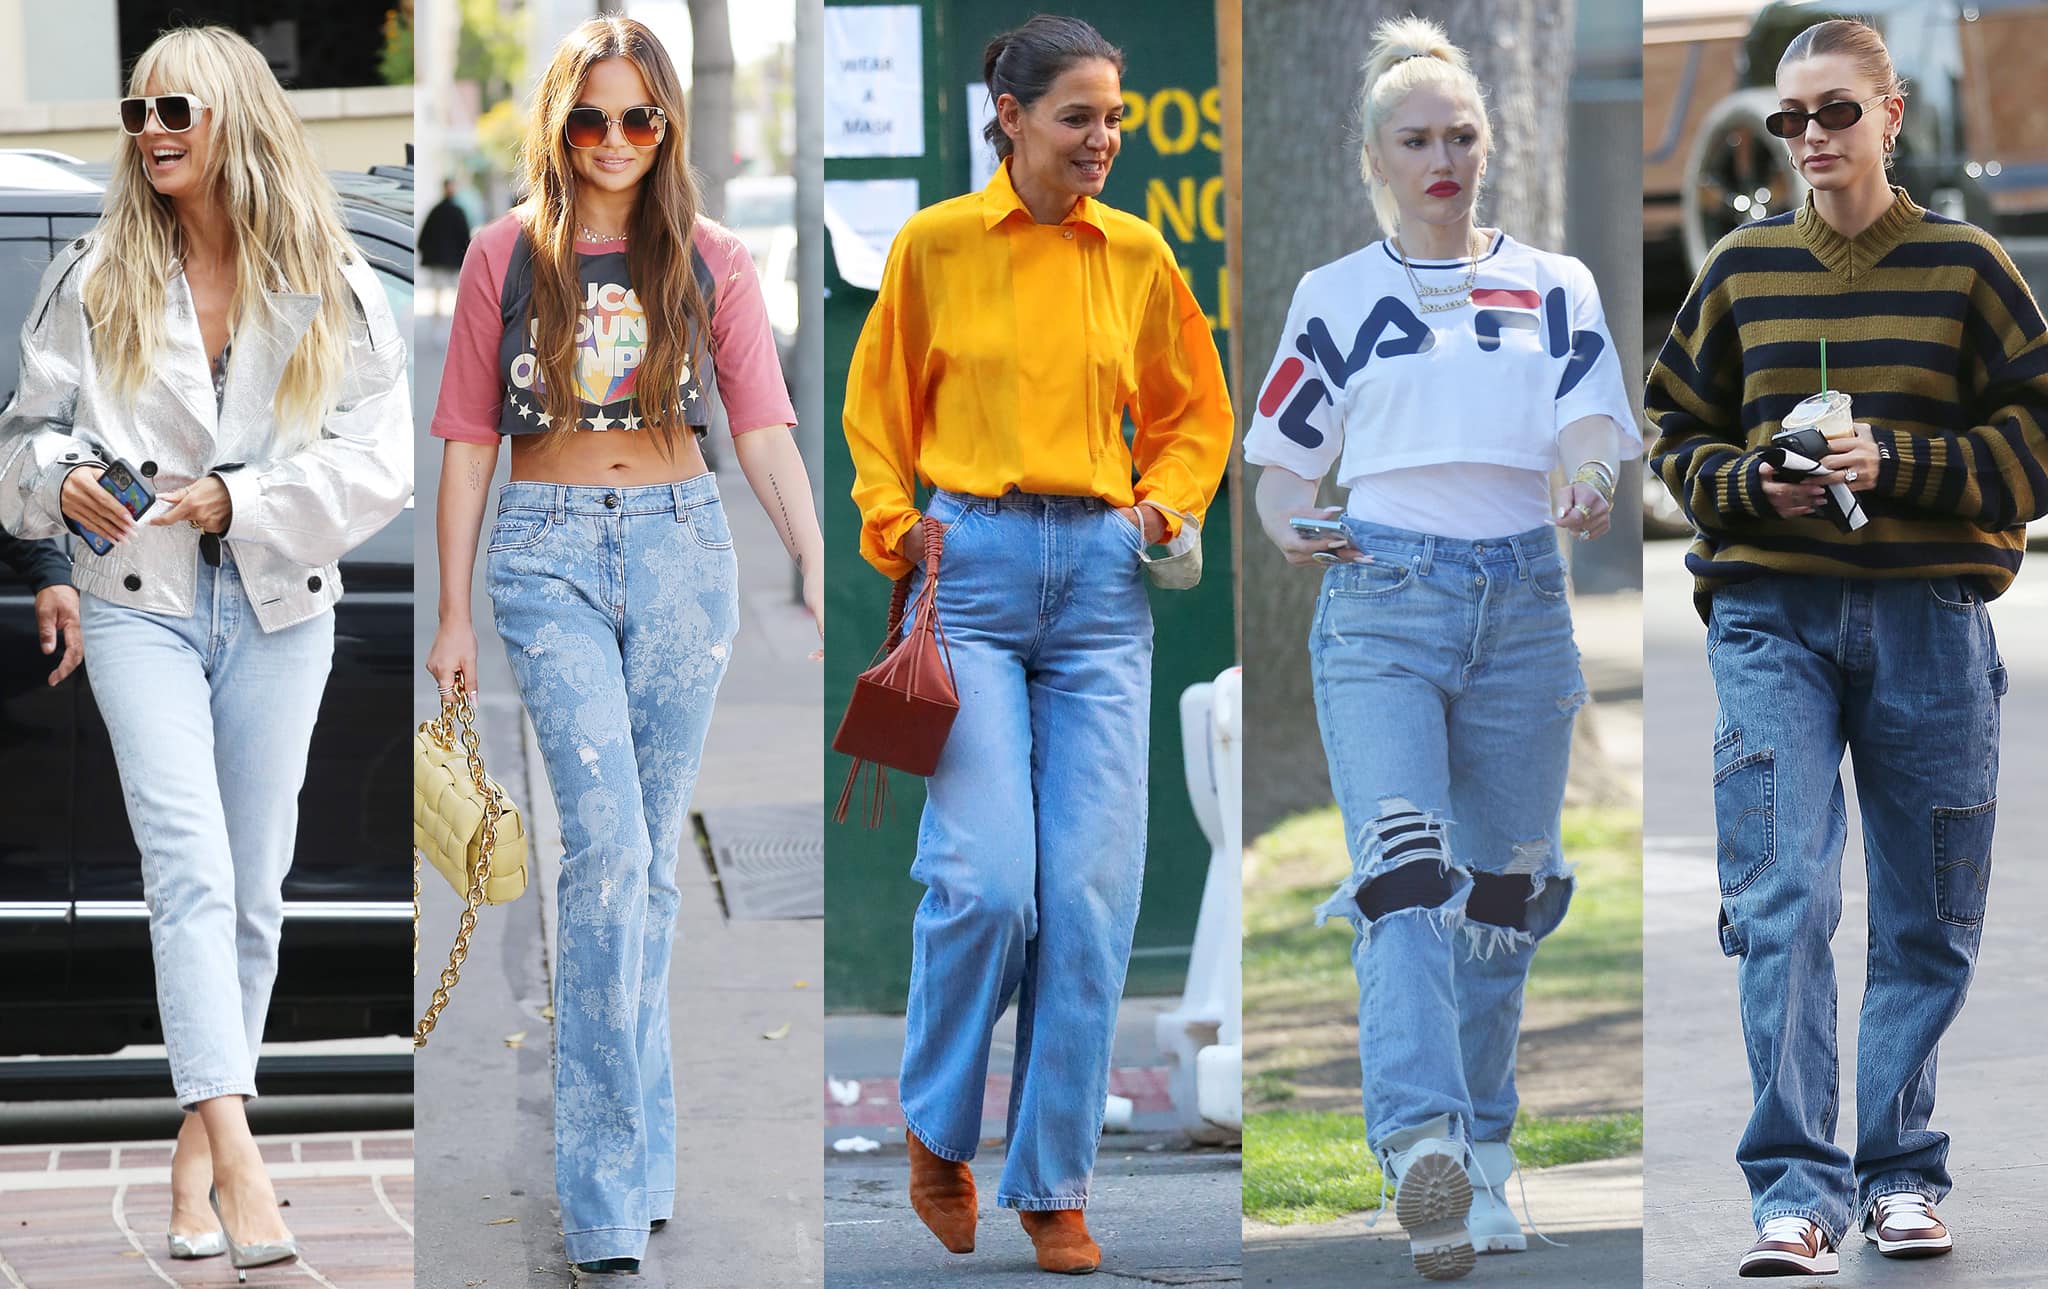 Heidi Klum, Chrissy Teigen, Katie Holmes, Gwen Stefani, and Hailey Bieber wearing this year's must-have jeans